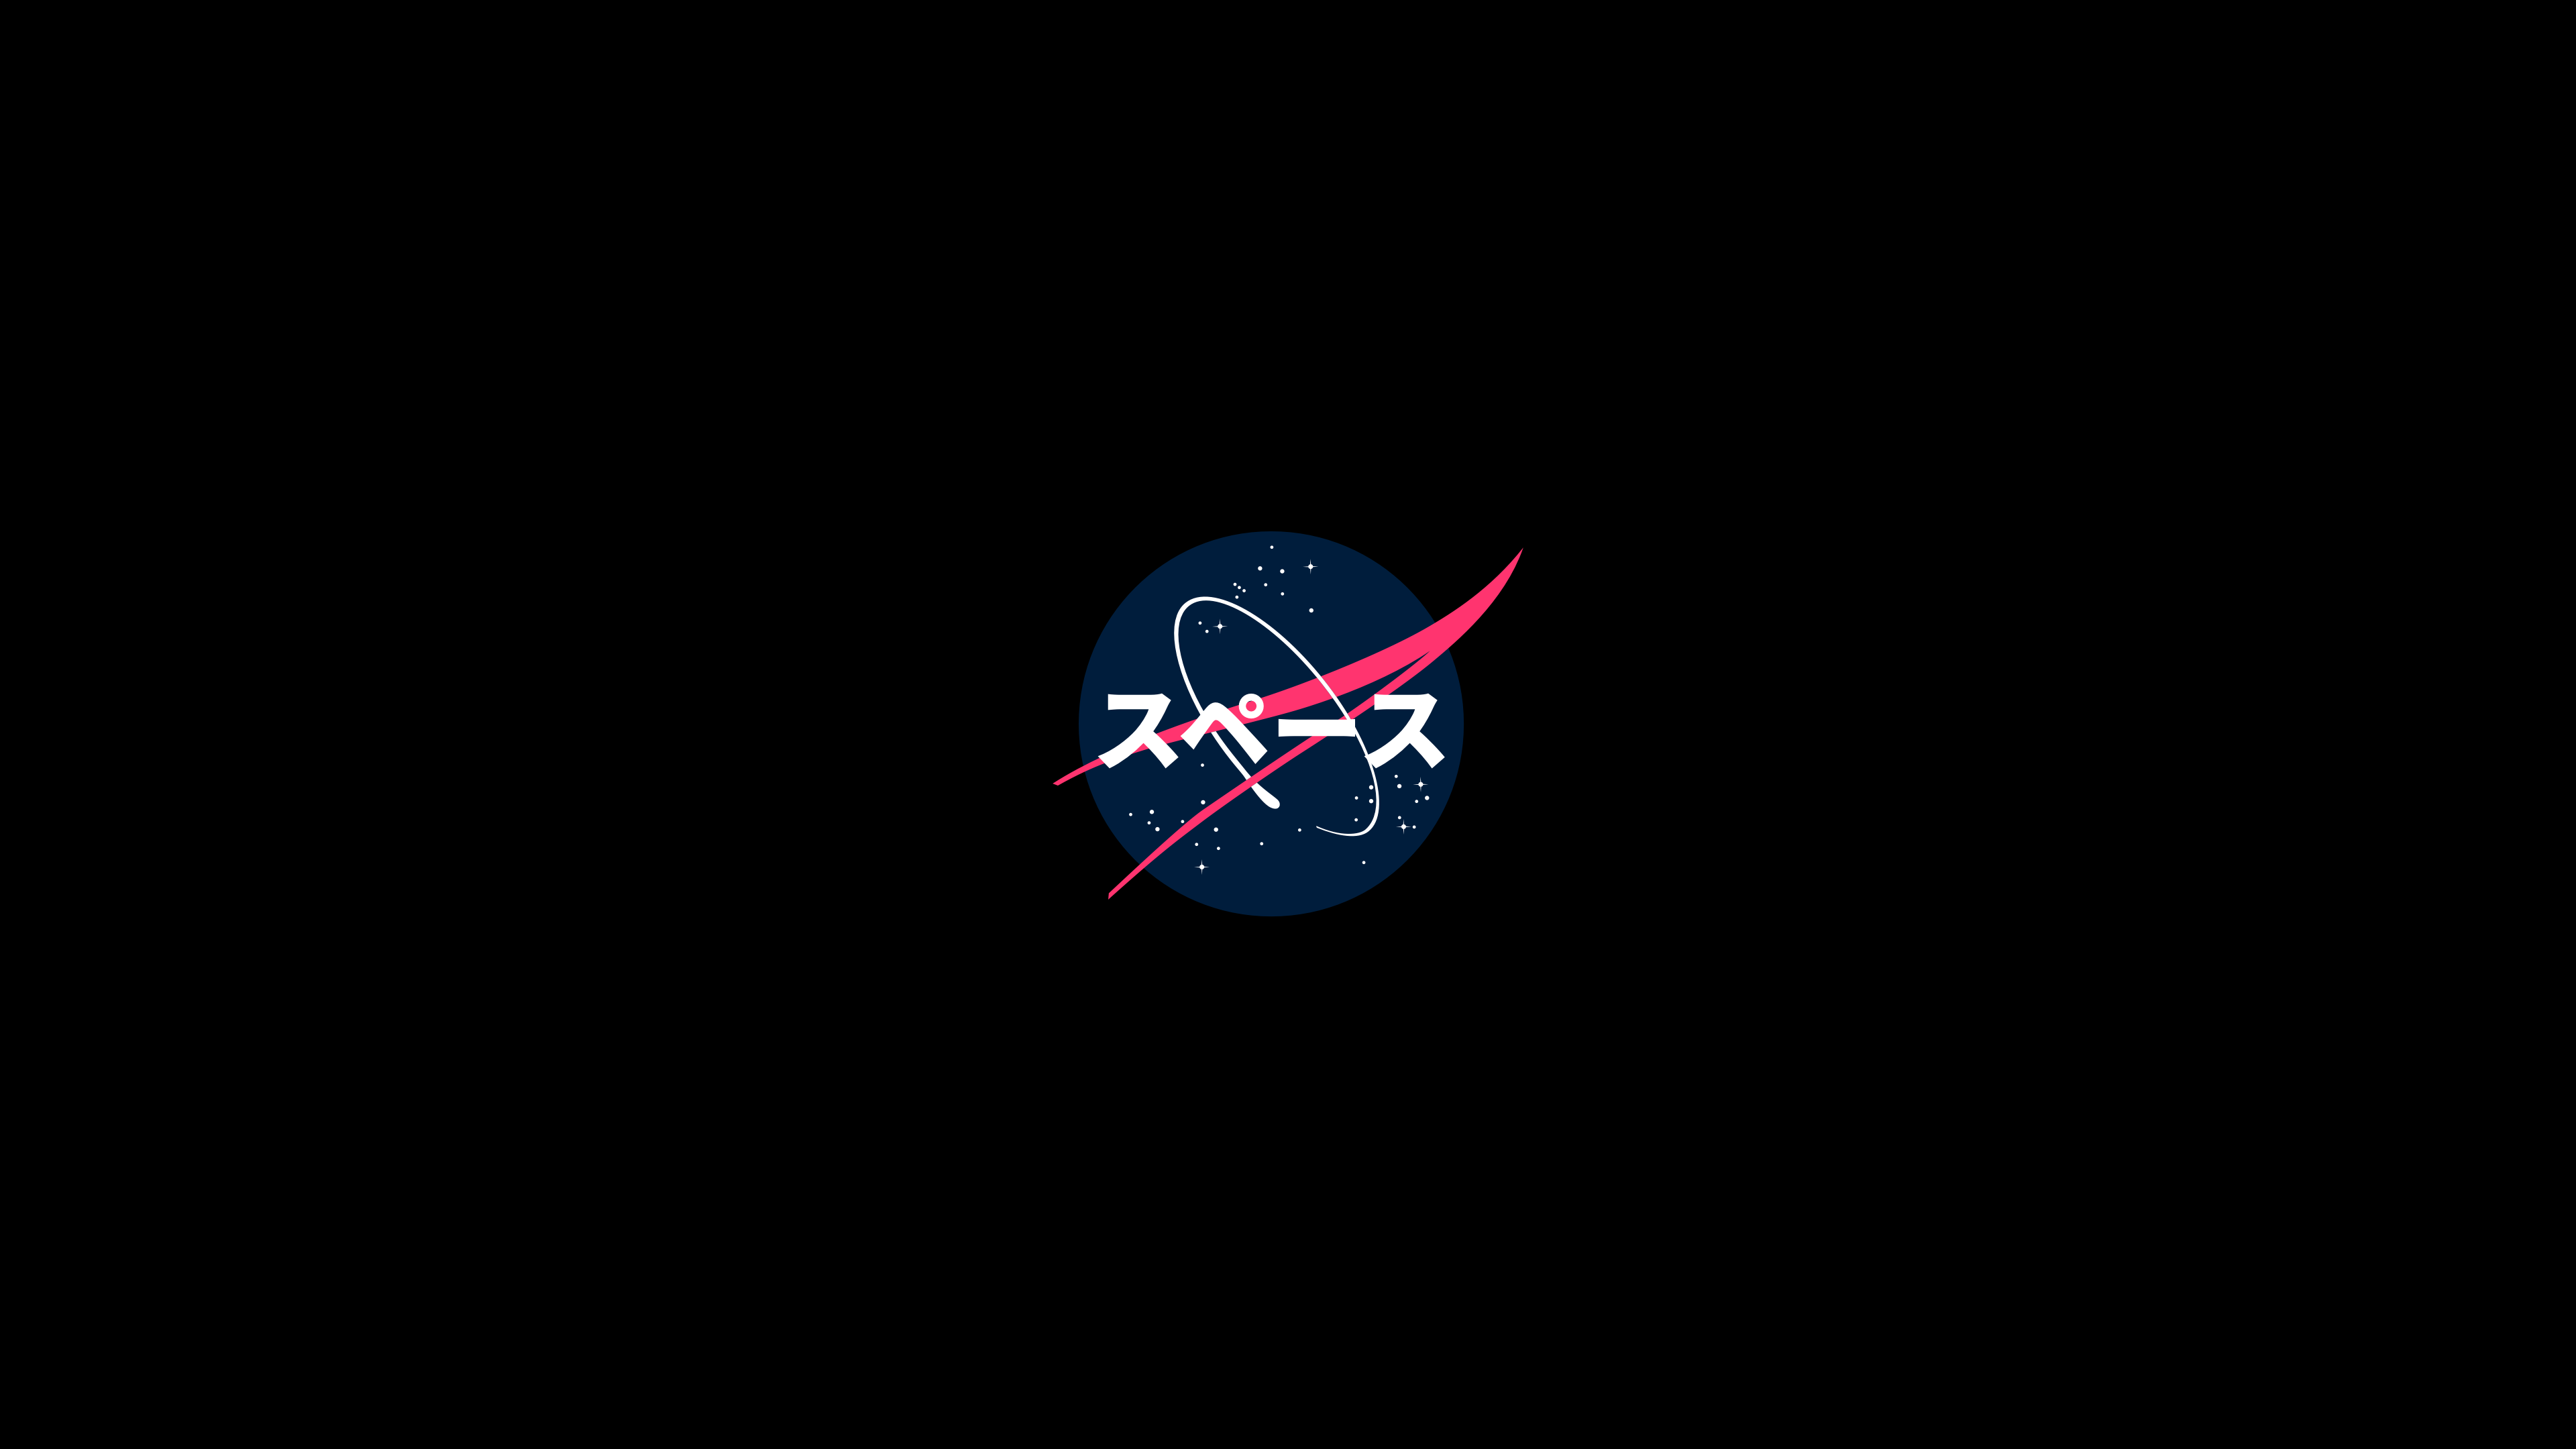 NASA Japanese Art #logo #minimalism #dark K #wallpaper #hdwallpaper # desktop. Nasa wallpaper, Japanese art, Art logo